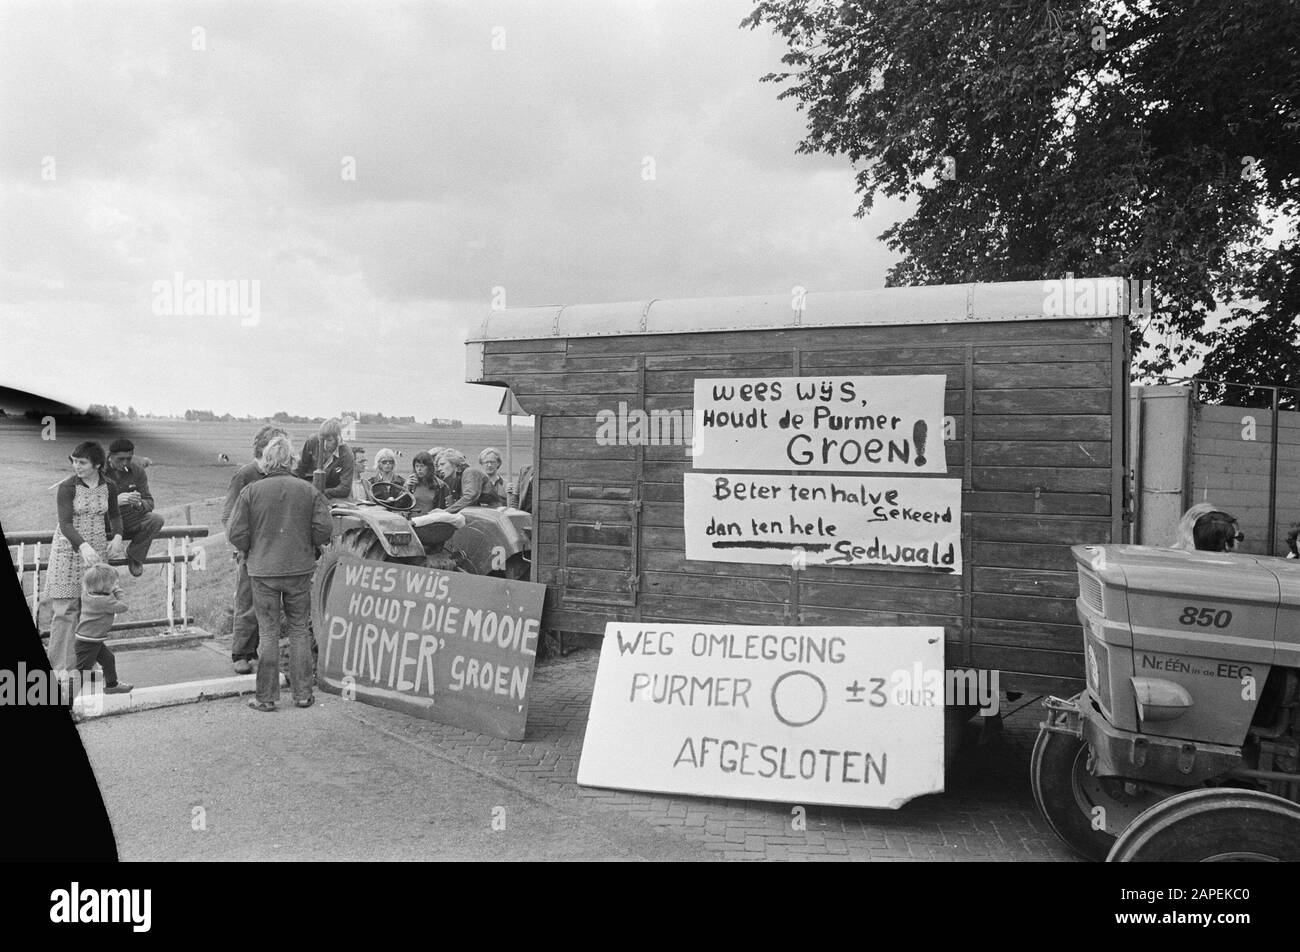 Les résidents de Purmerpolder bloquent les routes de protestation contre les plans de construction dans le polder; signes de protestation sur le camion Date: 29 mai 1974 mots clés: Routes, résidents, protestations, camions Banque D'Images